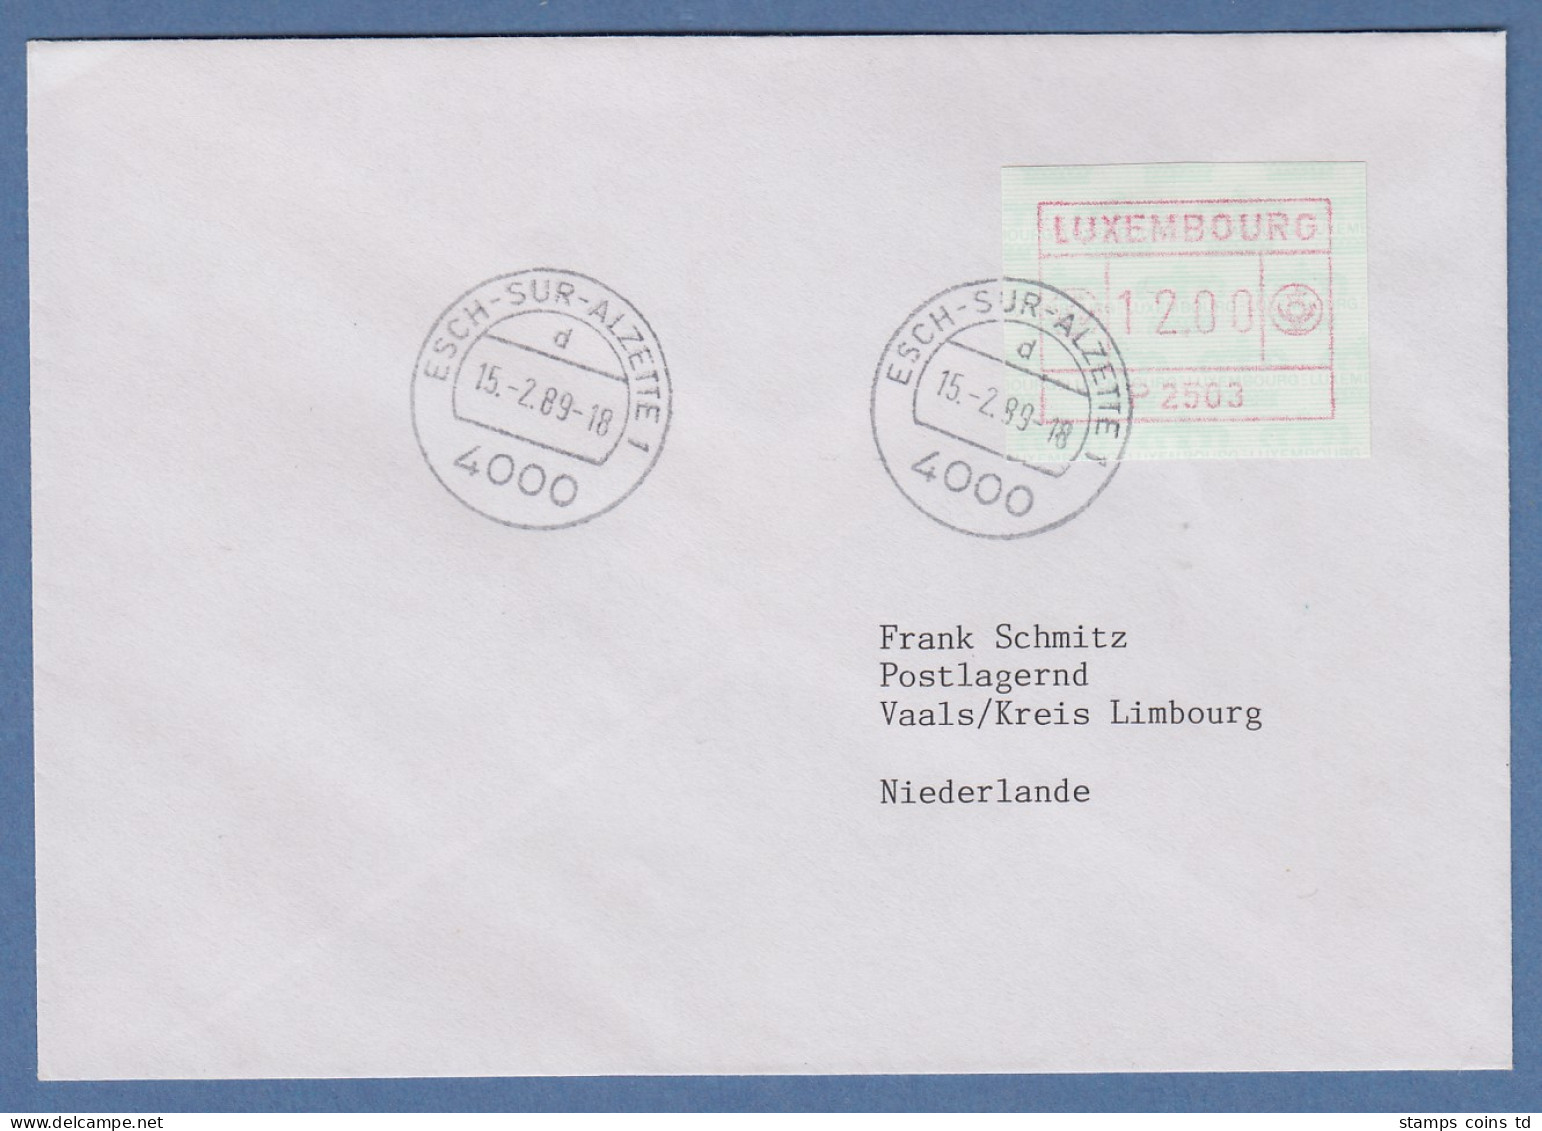 Luxemburg ATM P2503 Wert 12,00 Auf Brief In Die Niederlande, 15.2.89 - Automatenmarken